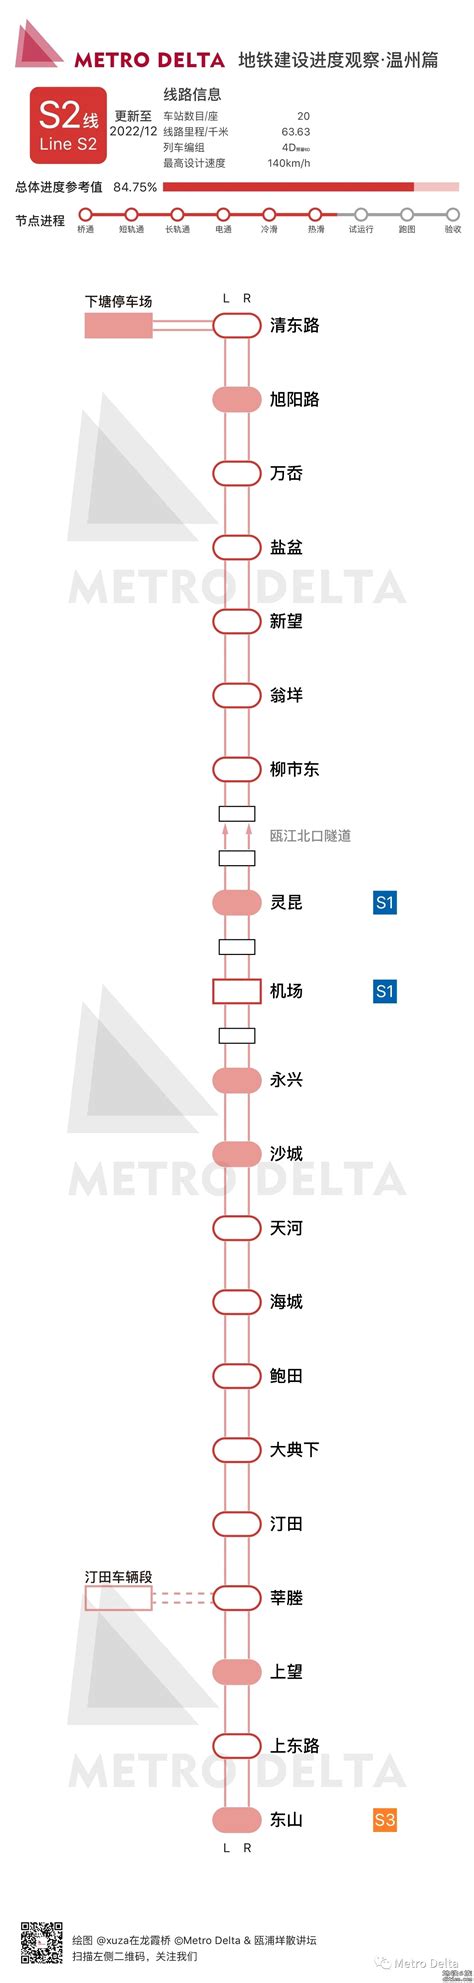 温州地铁轨道交通S1线开通及早晚运营时间表_高清线路图和沿途站点周边介绍 - 温州都市圈